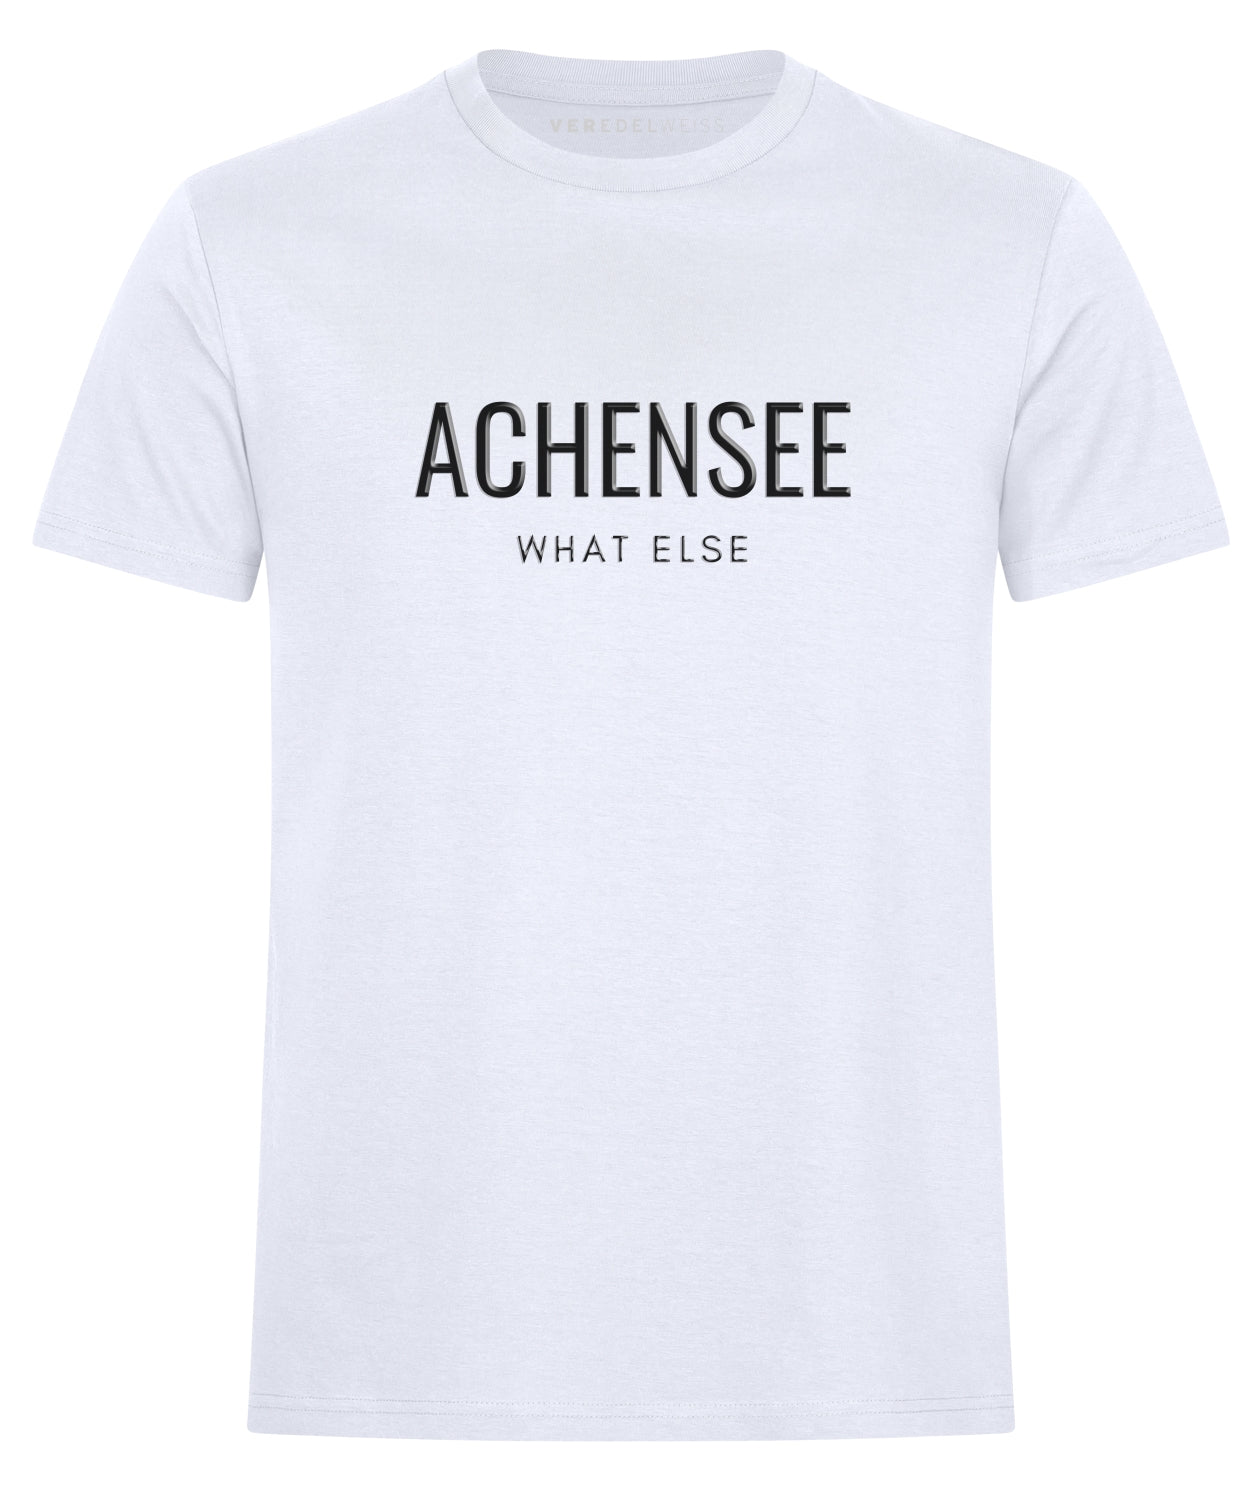 Achensee - What Else (Herren/Unisex) Achensee - What Else (Herren/Unisex)